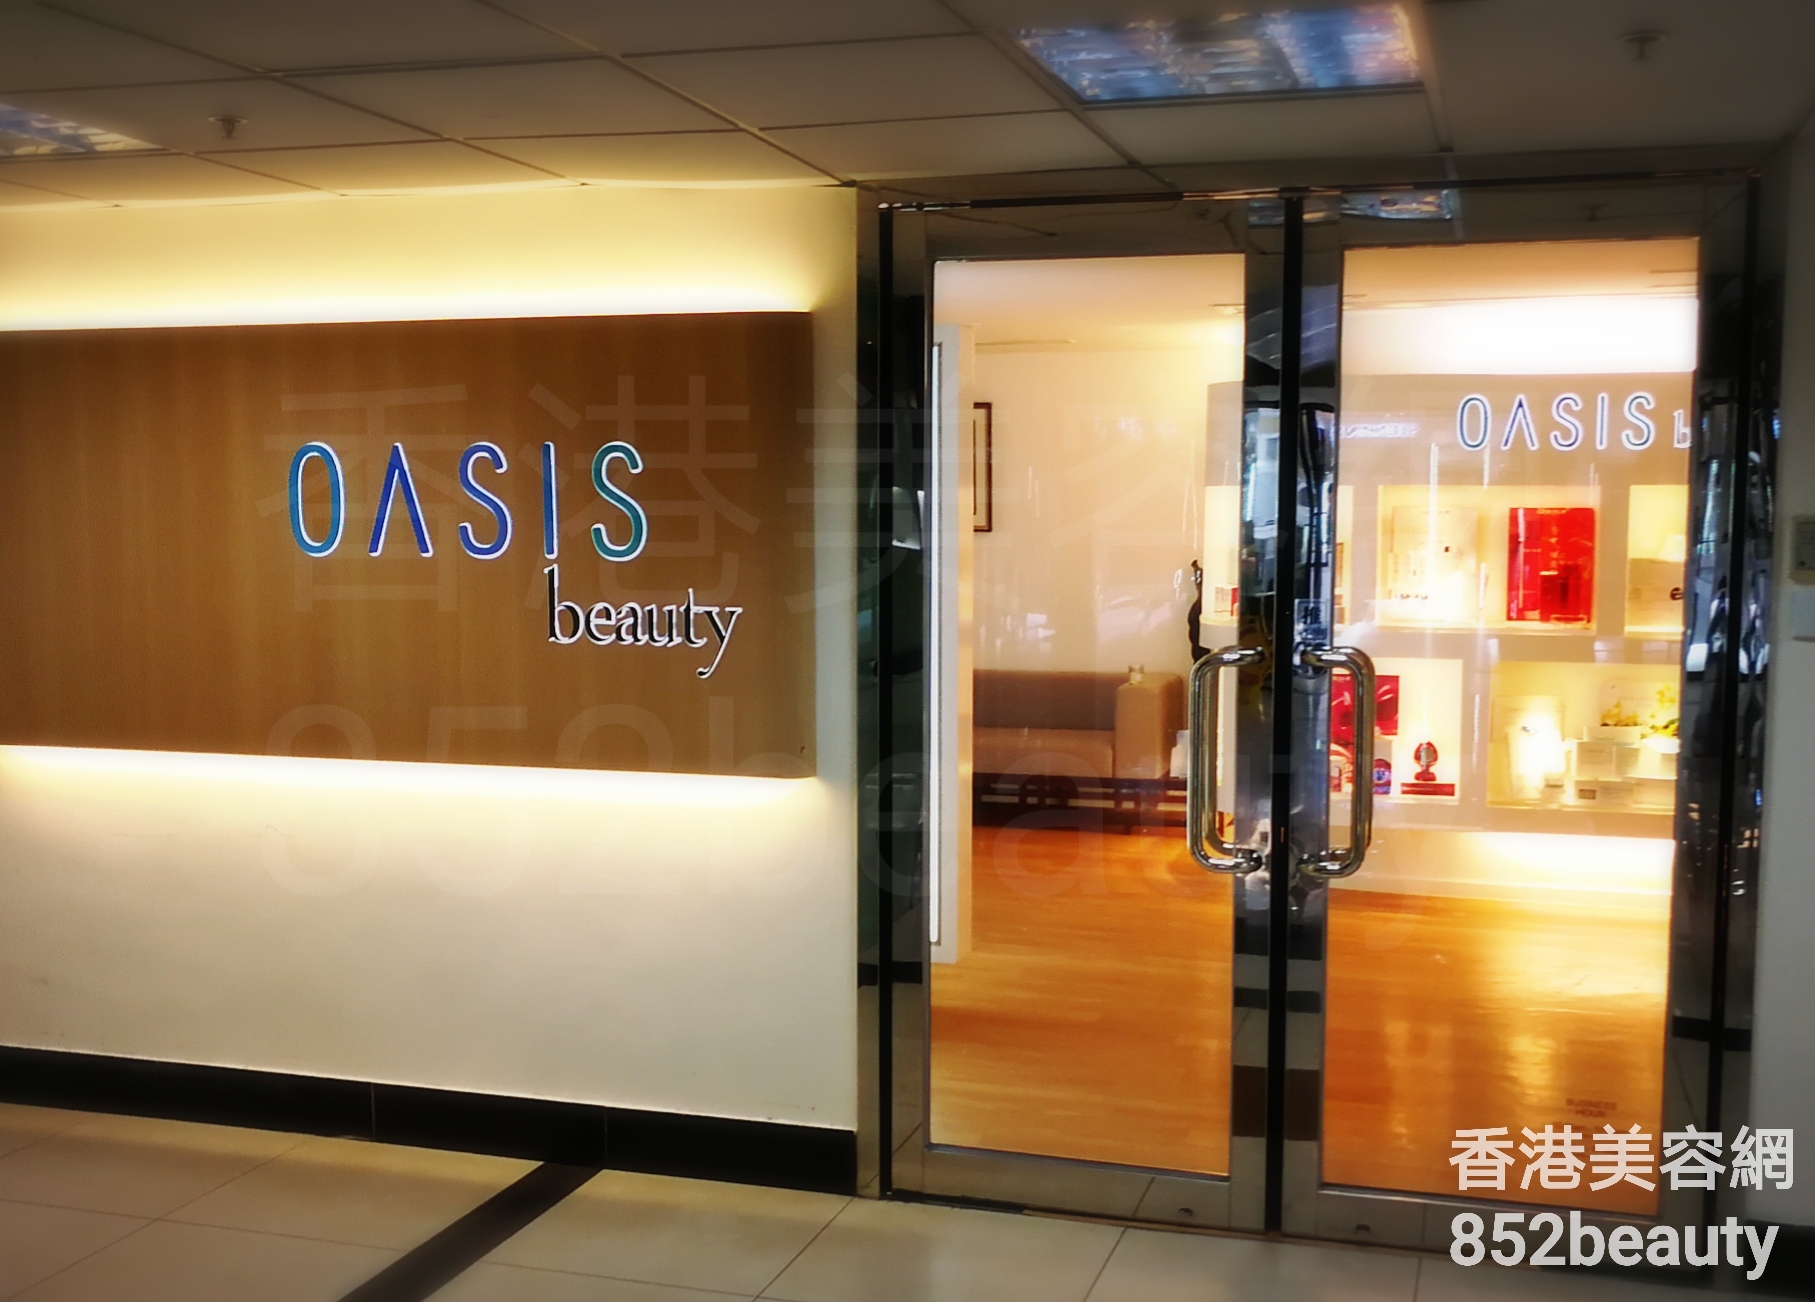 香港美容網 Hong Kong Beauty Salon 美容院 / 美容師: OASIS beauty (屯門店)